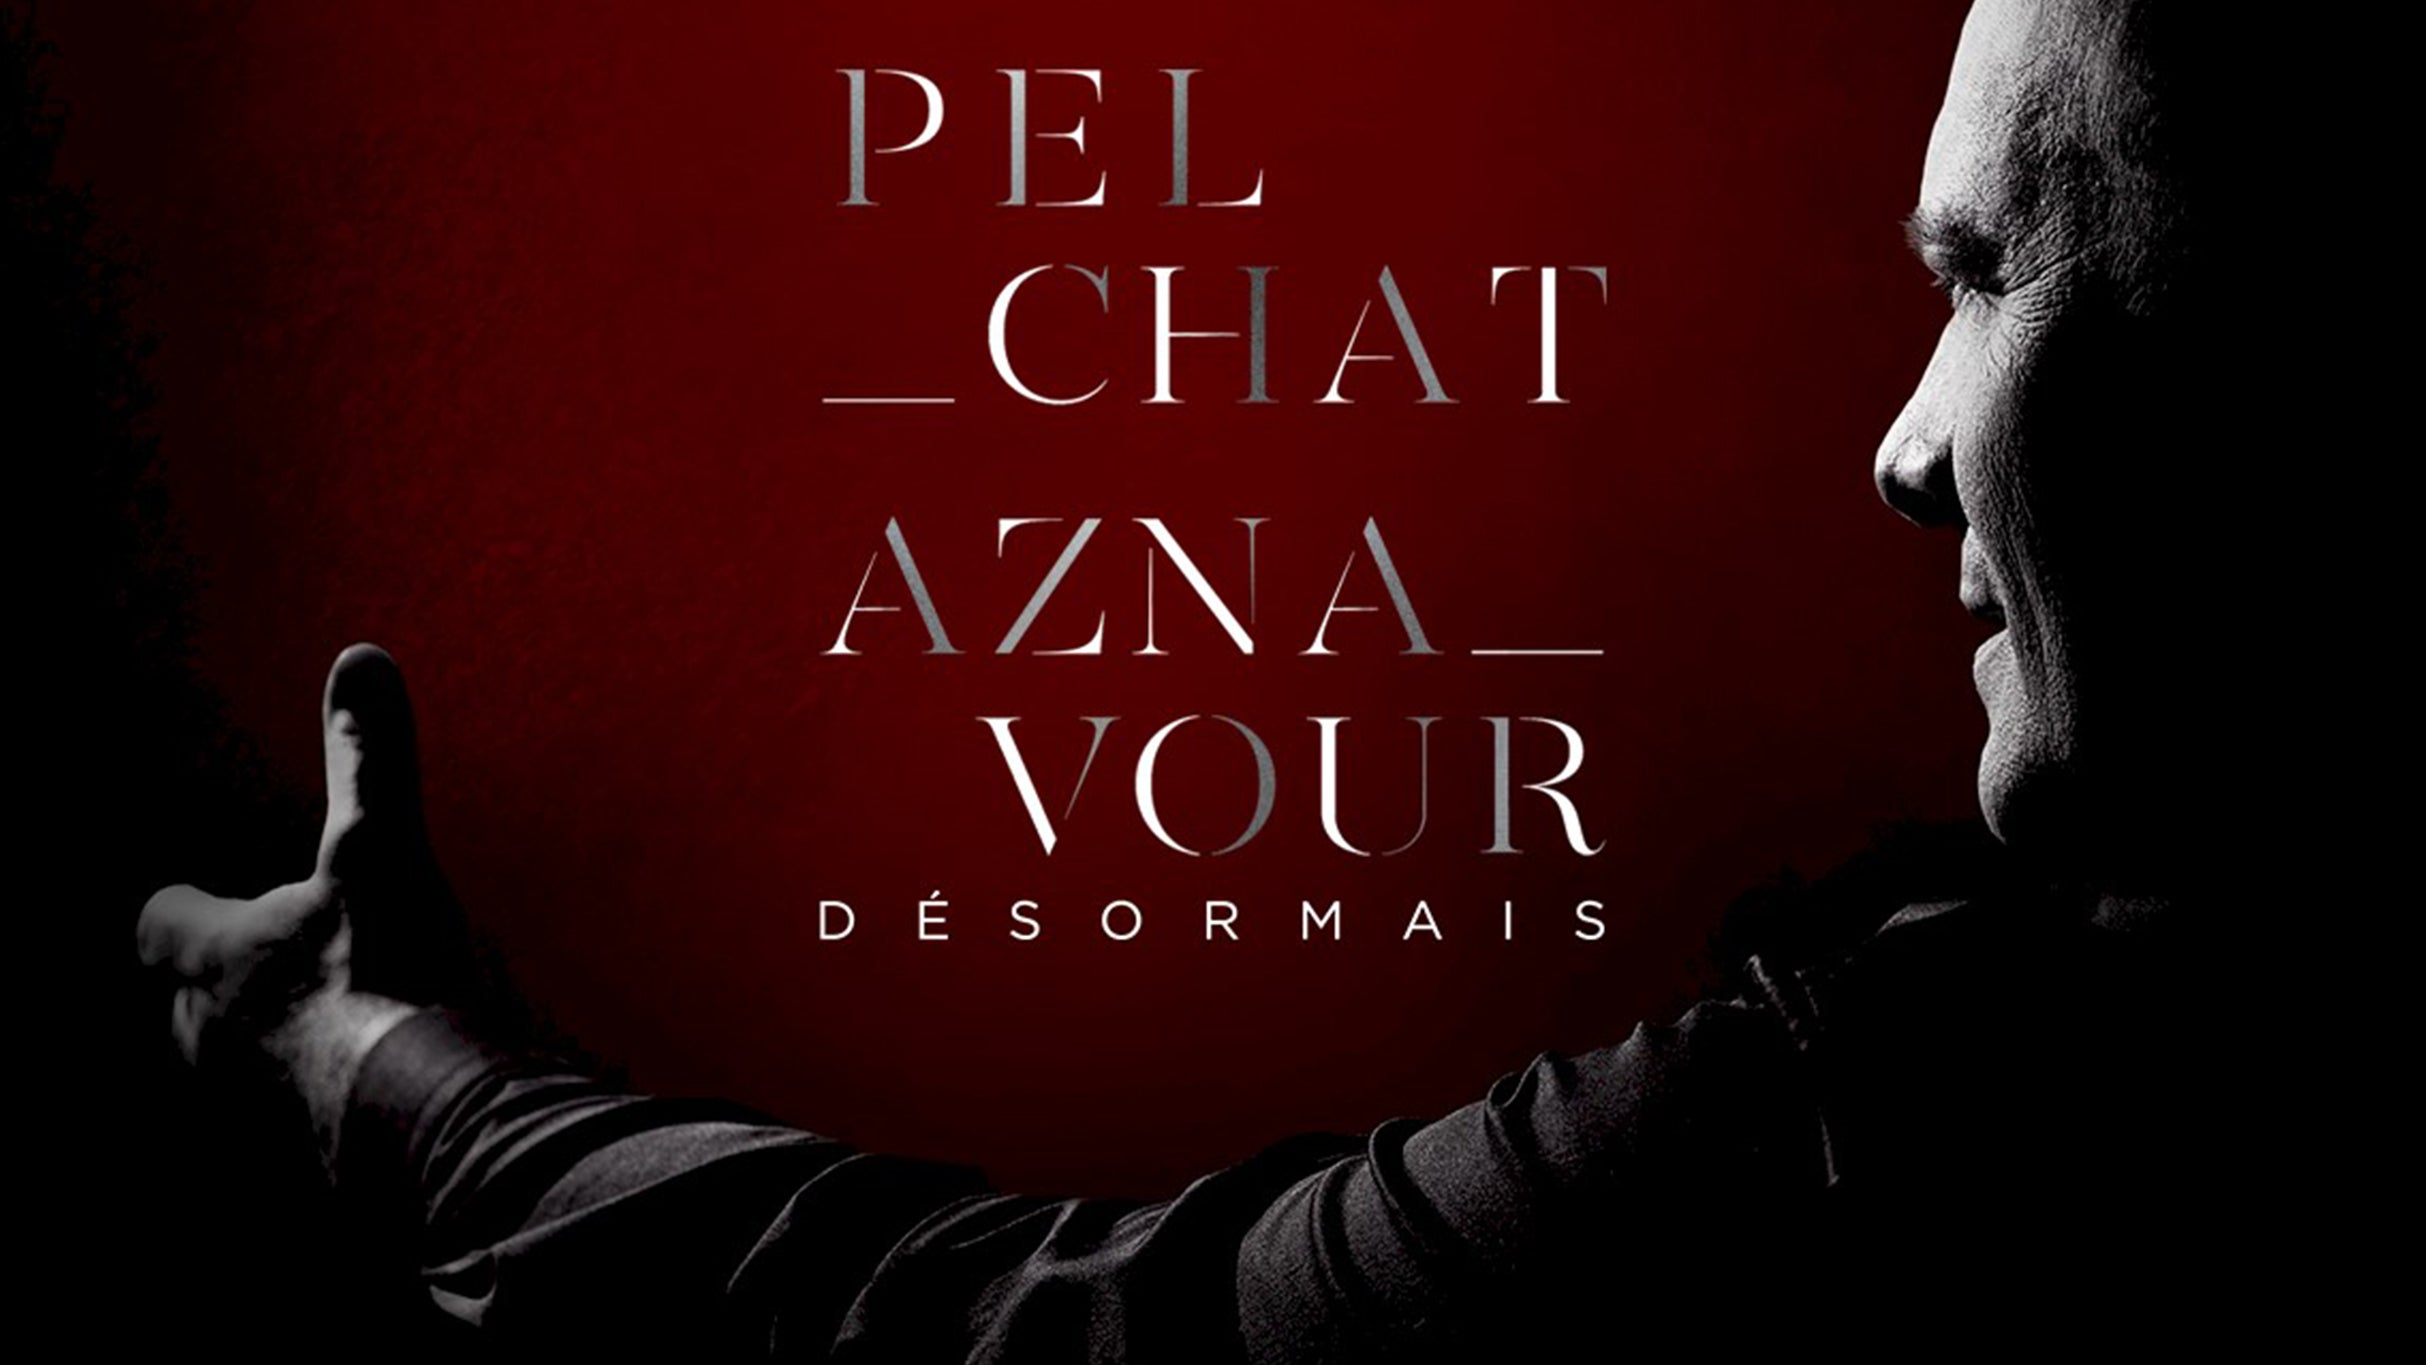 Mario Pelchat – Aznavour Désormais